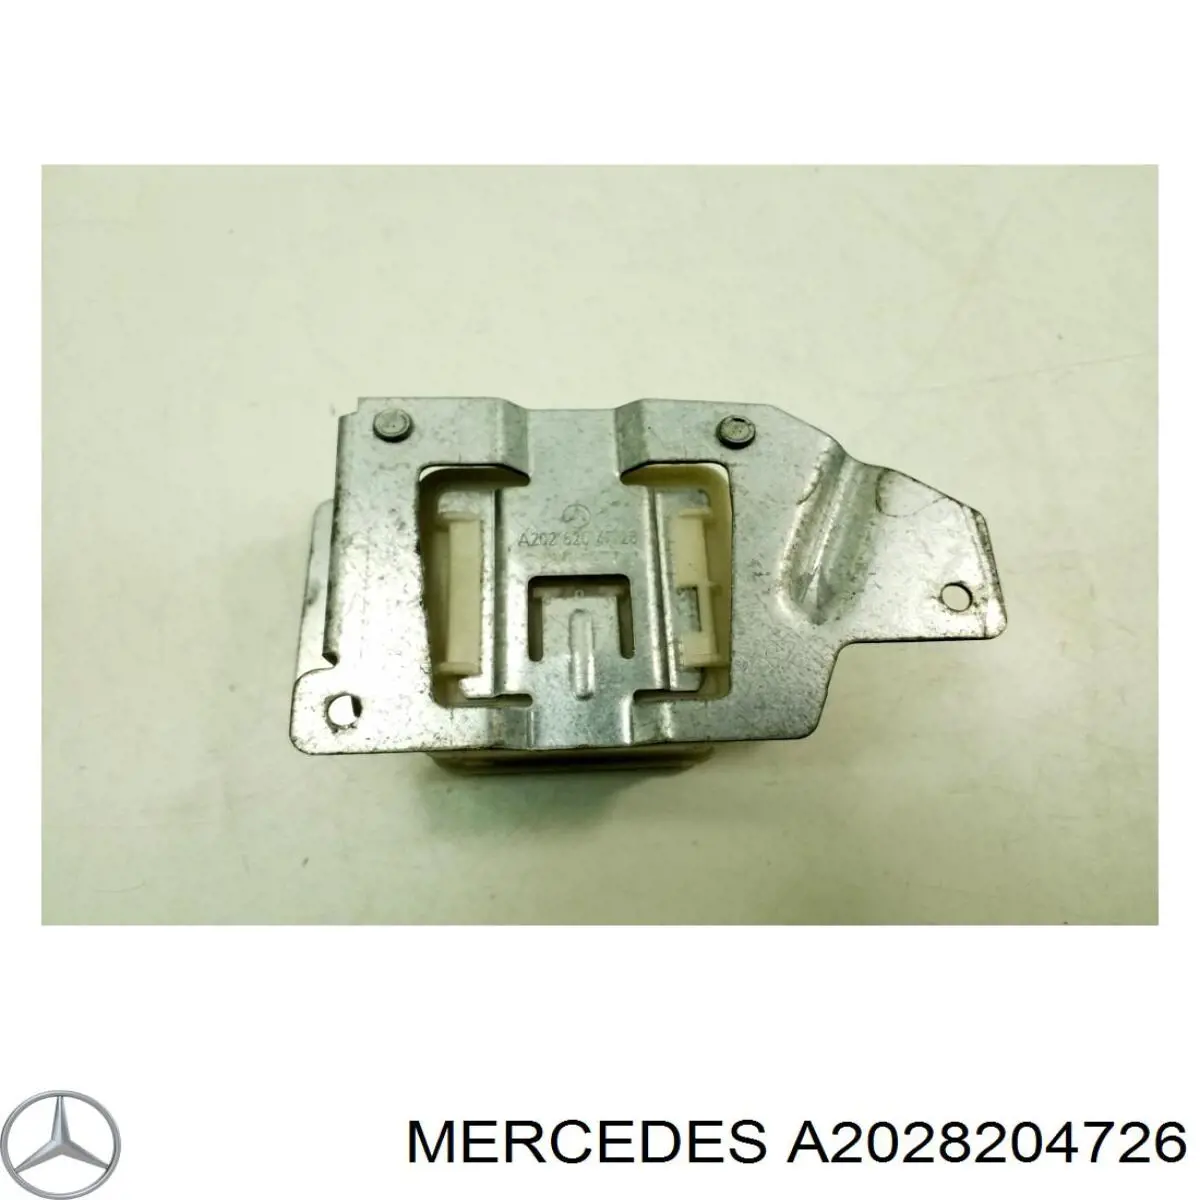 A2028204726 Mercedes брелок управления сигнализацией